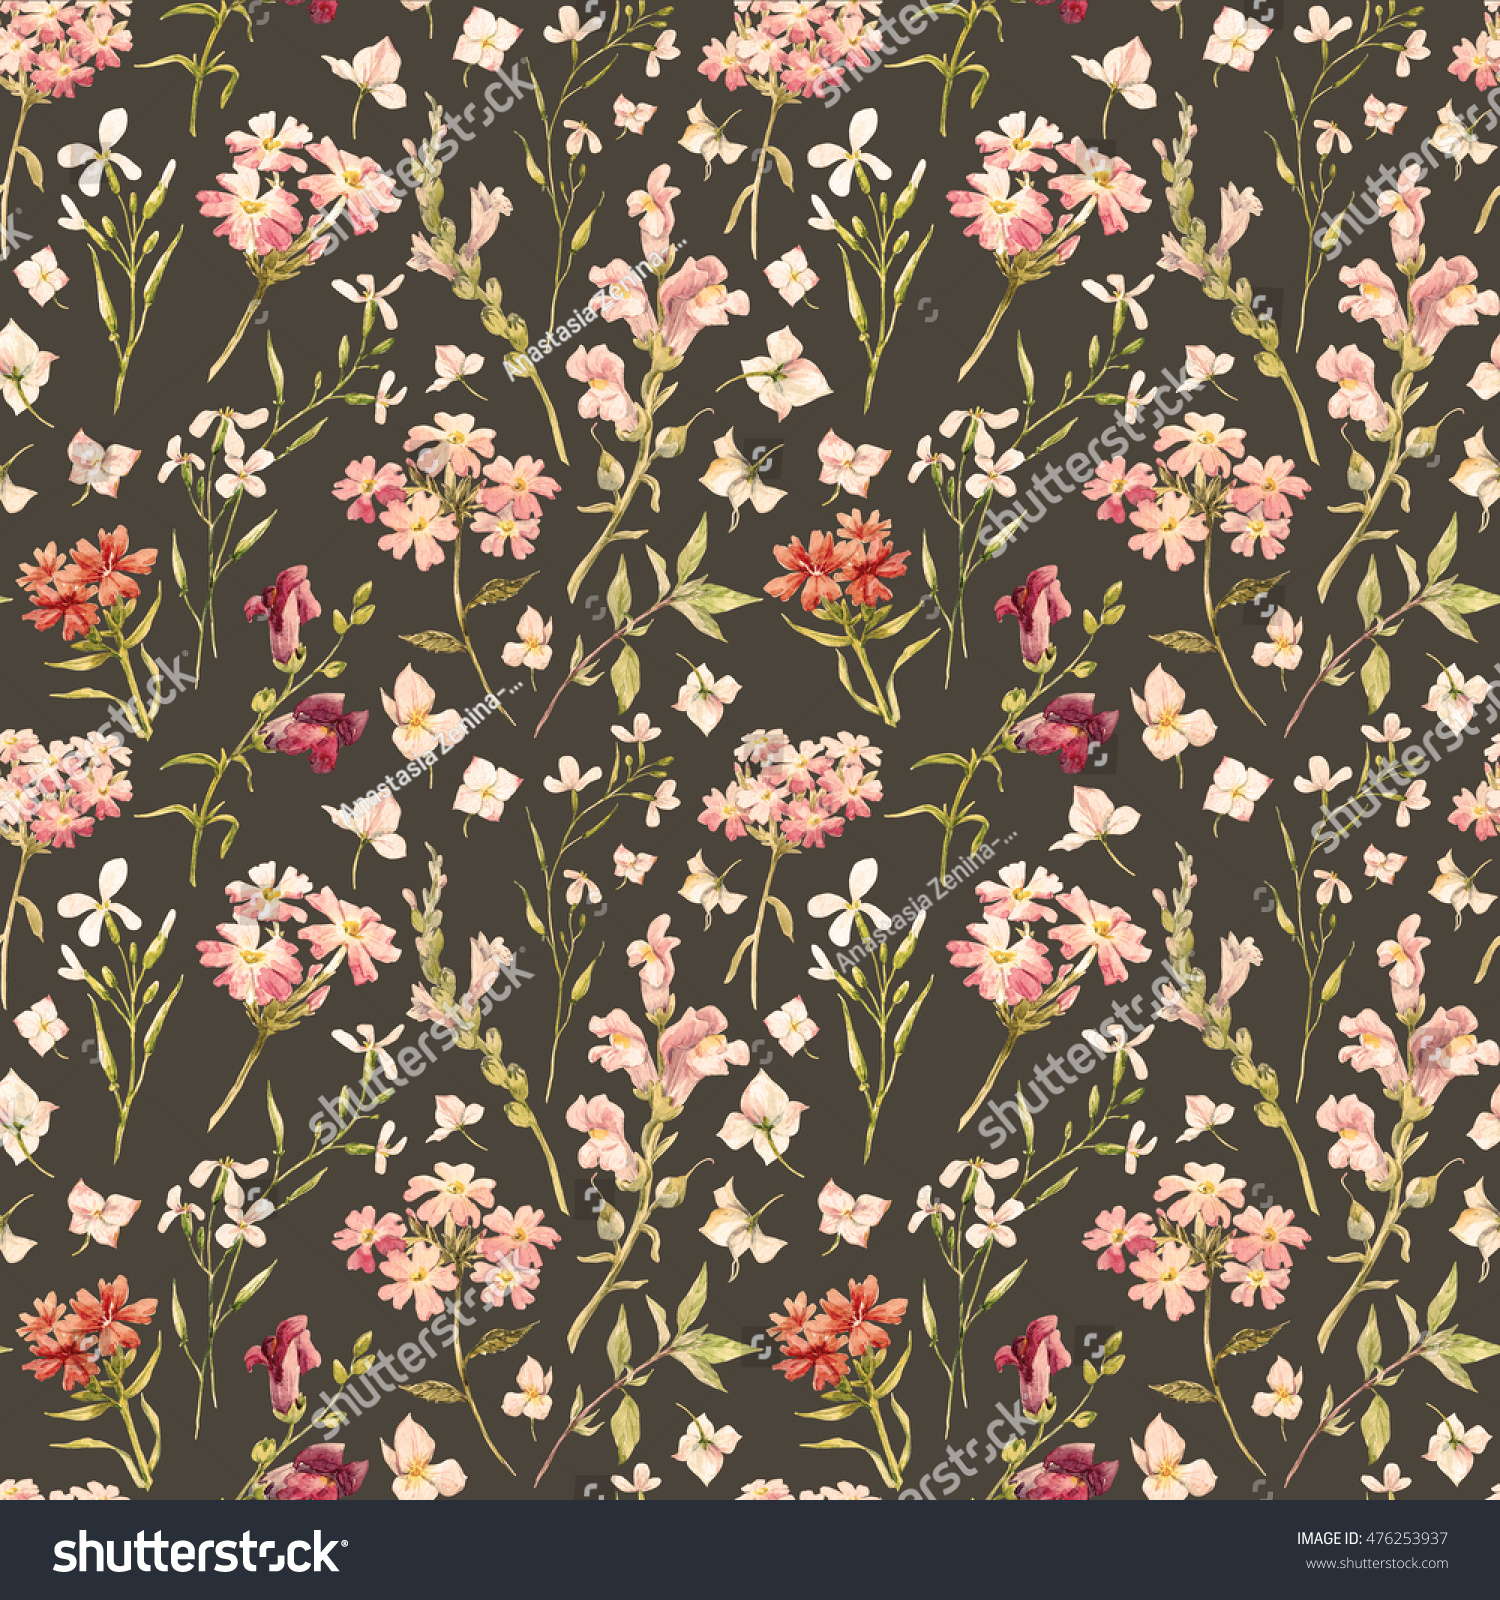 水彩花柄 繊細な花の壁紙 野花のピンク レトロな背景 のイラスト素材 Shutterstock